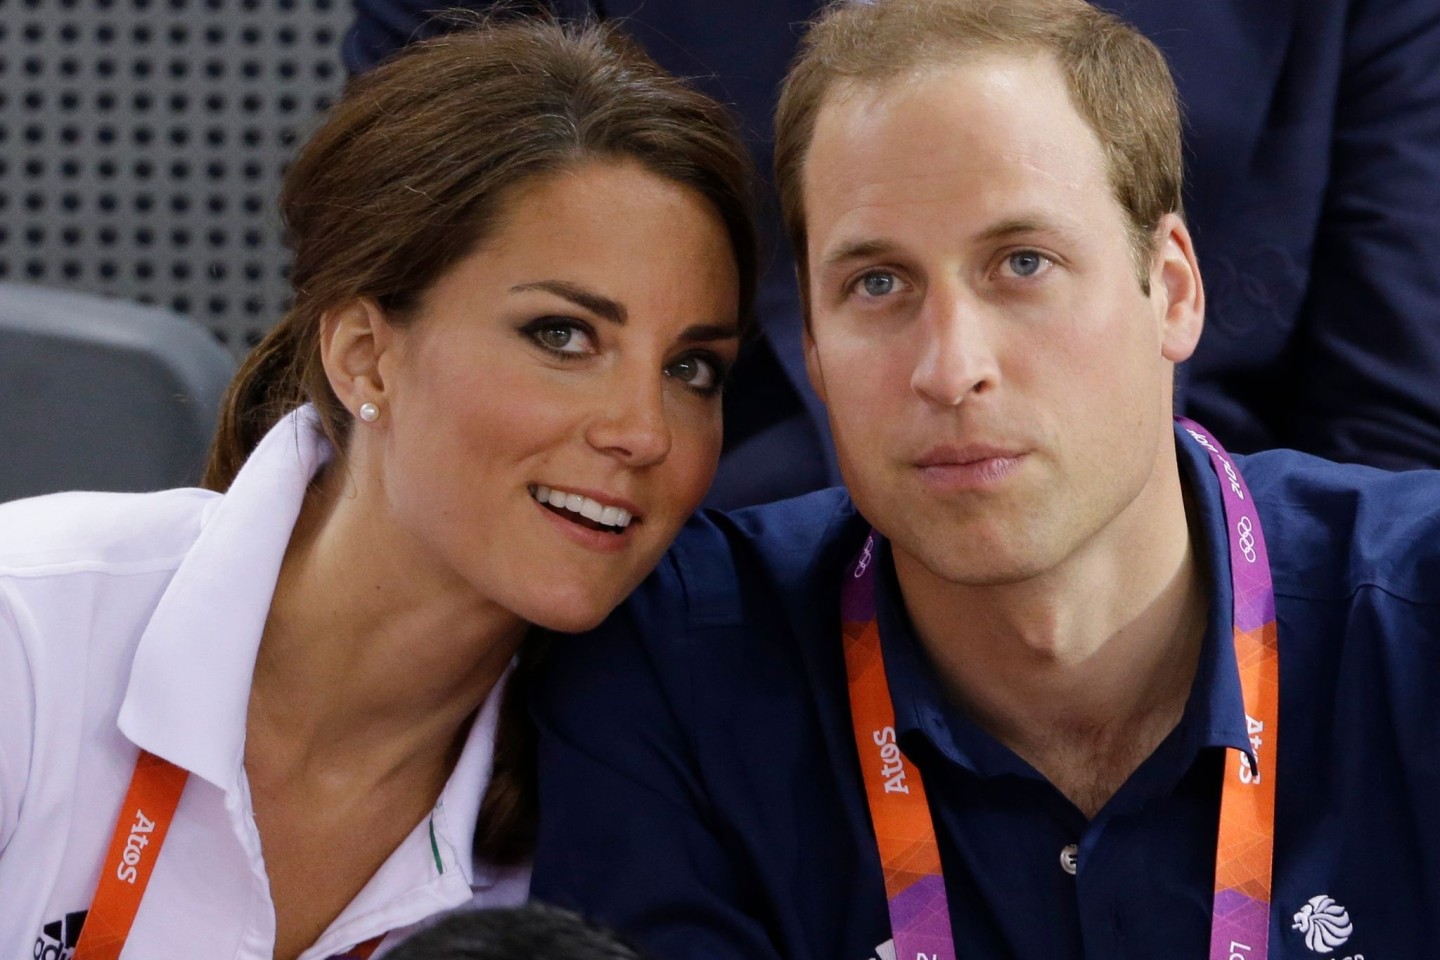 Kate, Prinzessin von Wales, und William, Prinz von Wales, bei den Olympischen Sommerspielen. Die Ehefrau des britischen Thronfolgers bekommt Chemotherapie, wie sie in einer Videobotschaft sa...